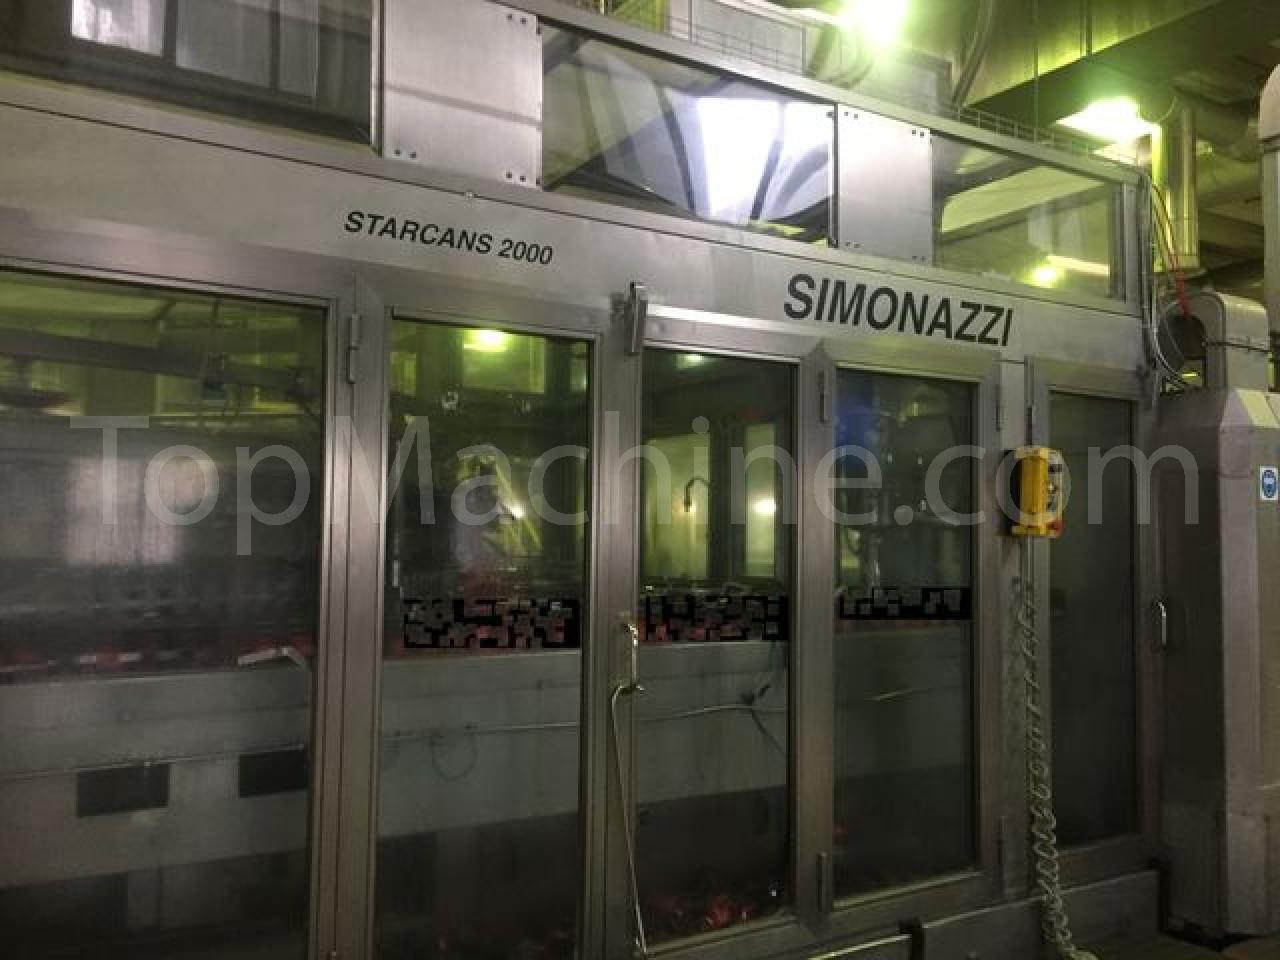 Used Simonazzi Starcans 2000 Boissons & Liquides Remplisseuse de canettes